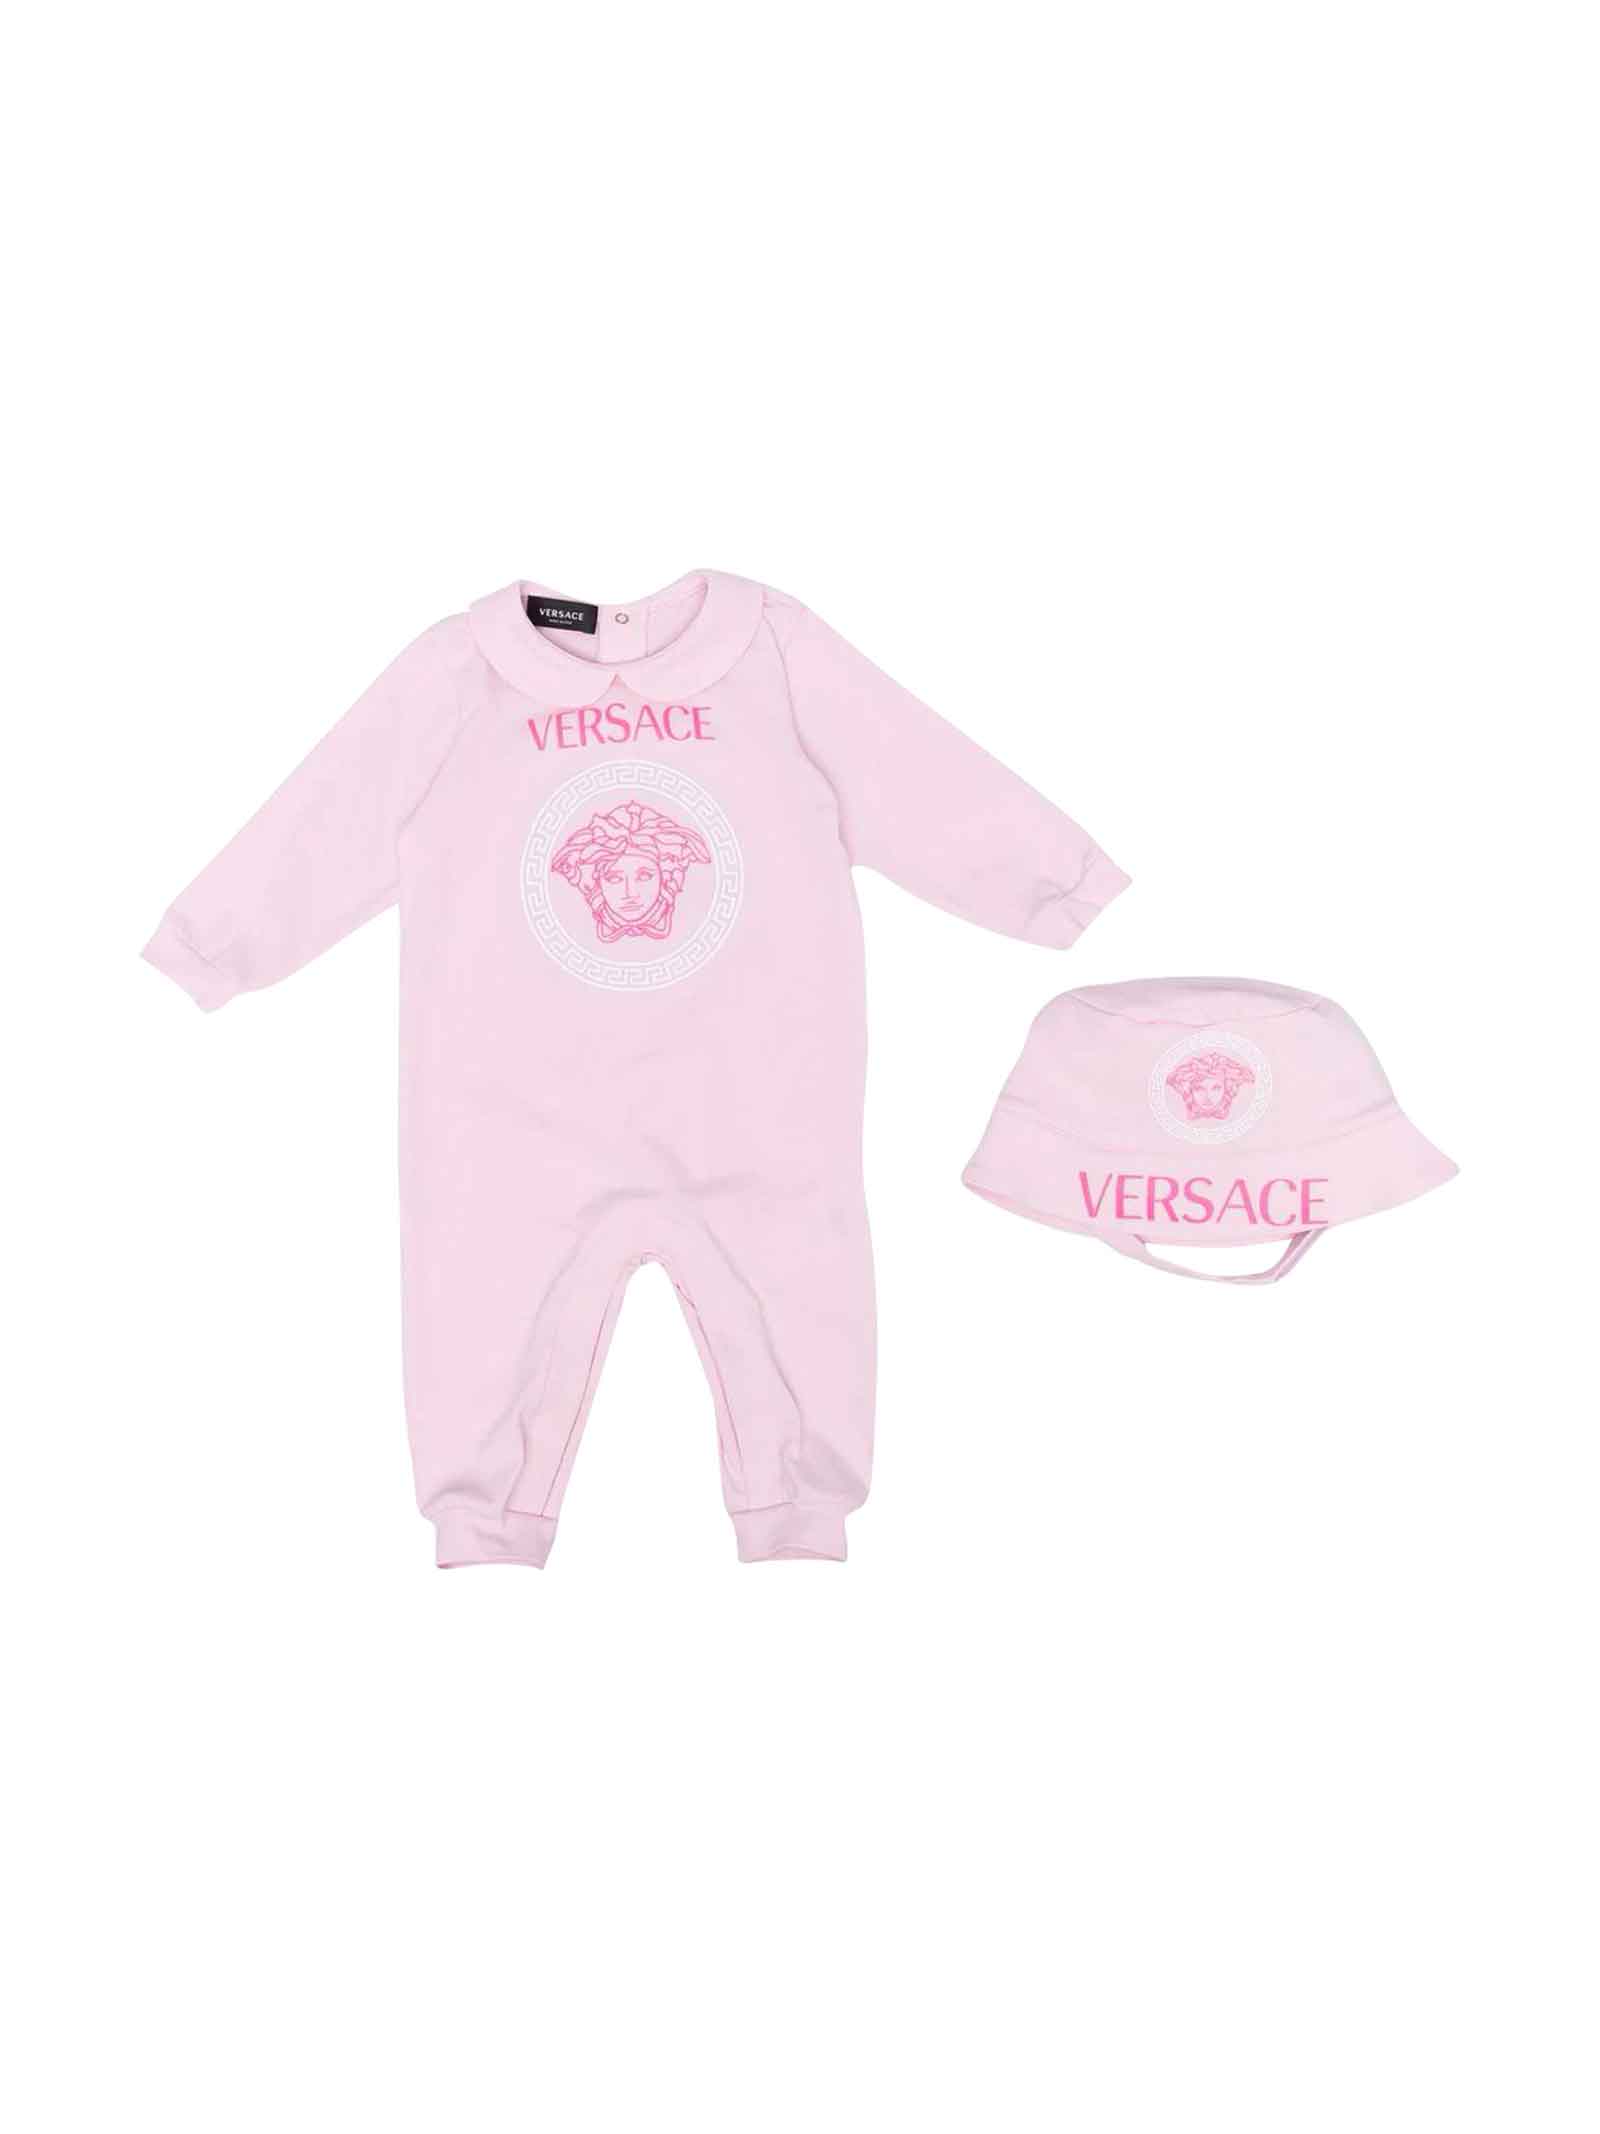 Versace Young Newborn Pink Onesie